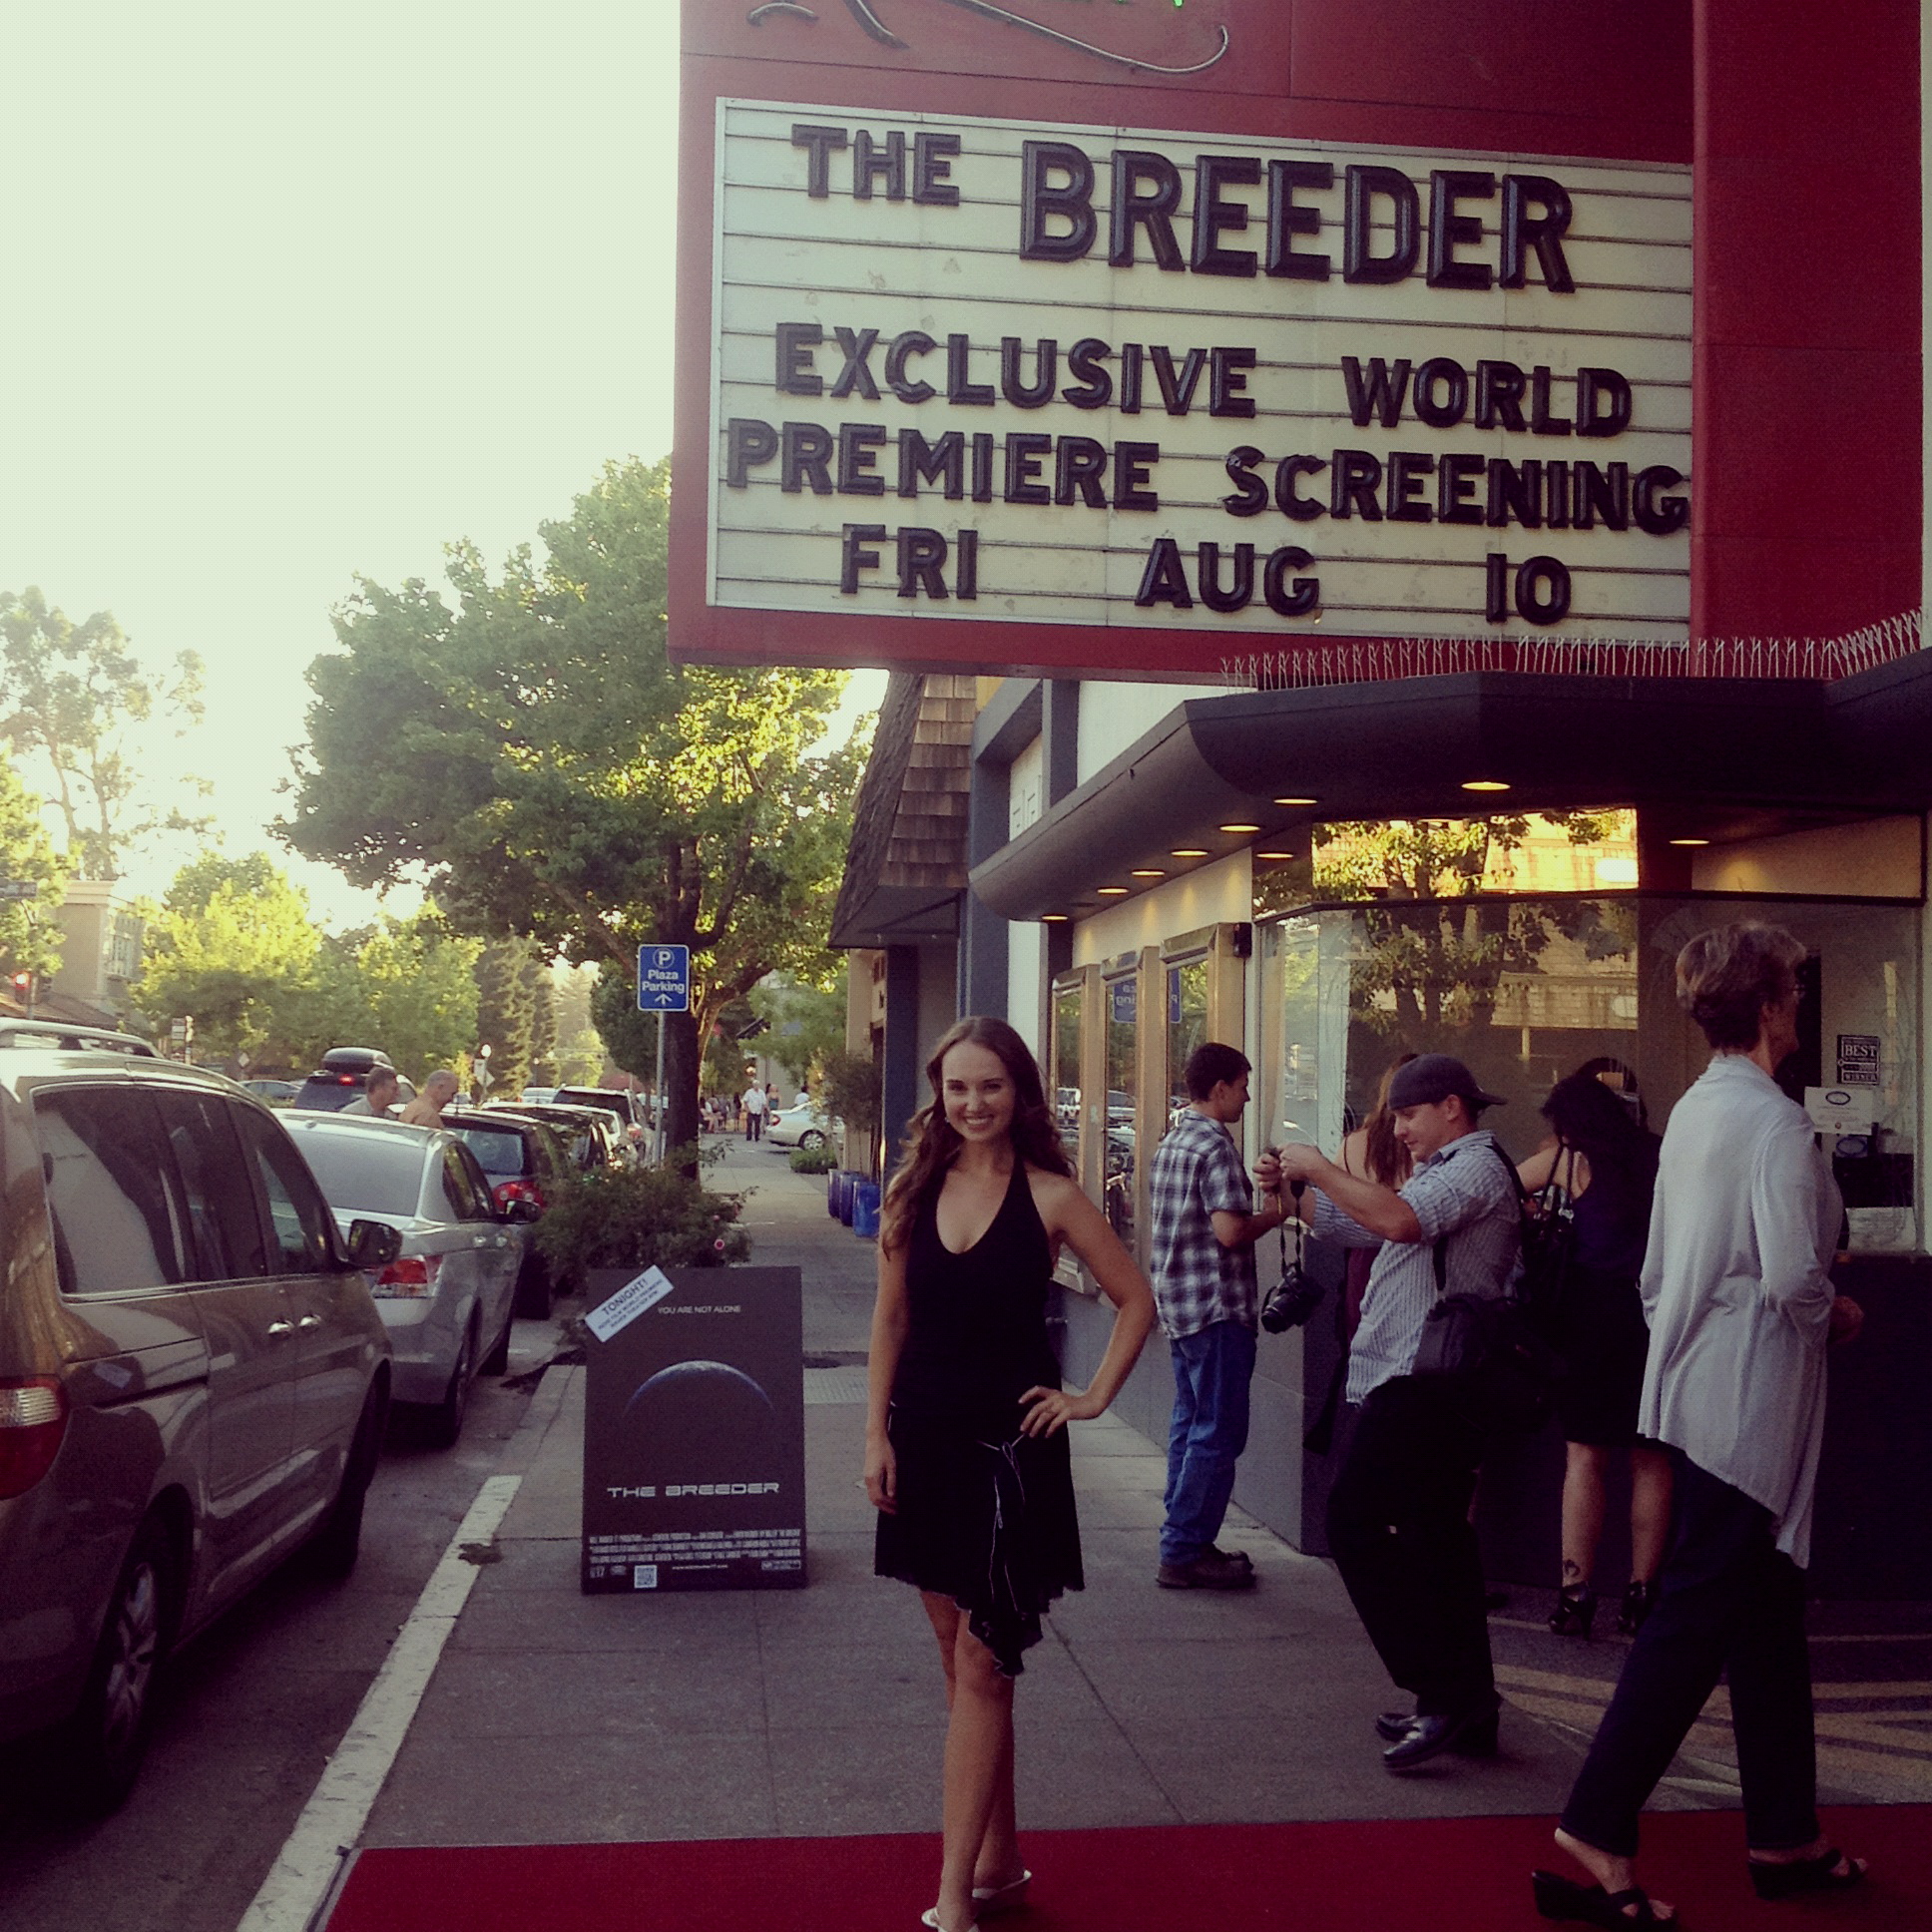 The Breeder movie premiere